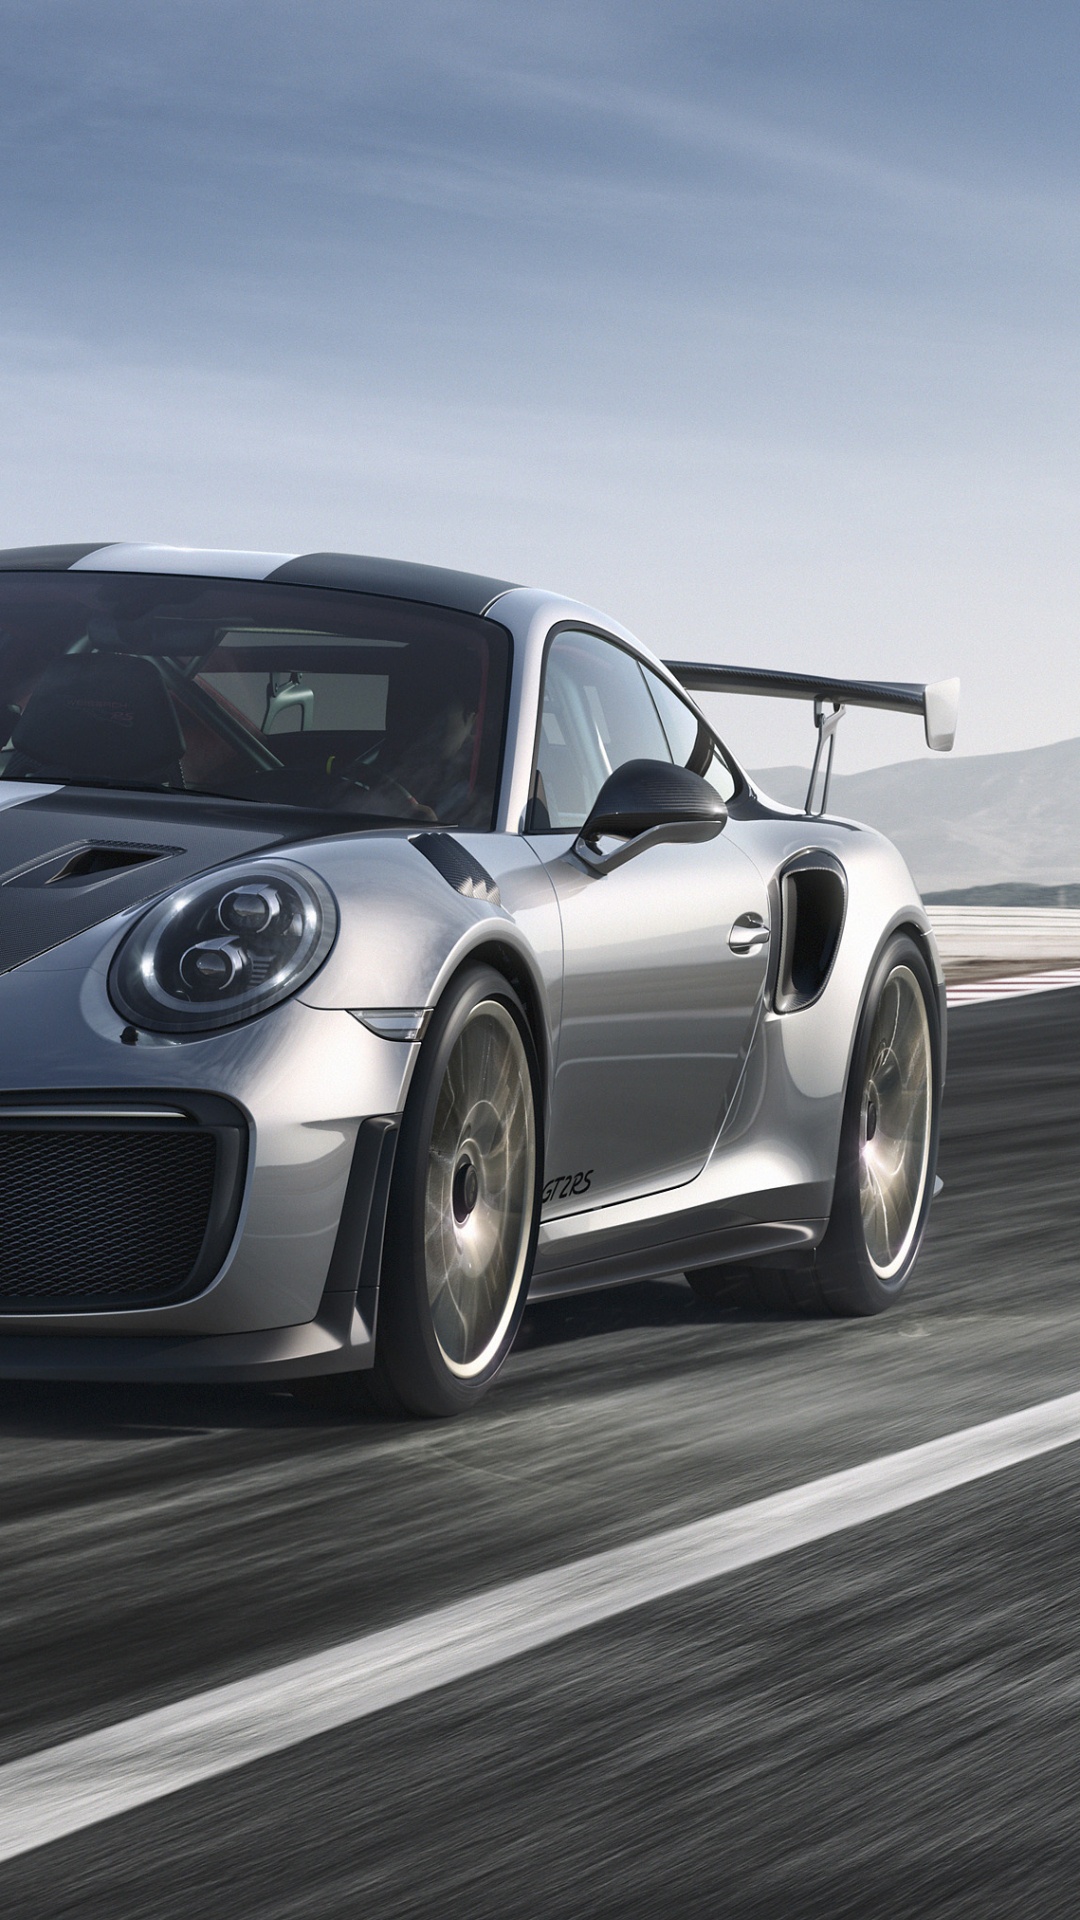 Porsche 911 Noire Sur Route. Wallpaper in 1080x1920 Resolution